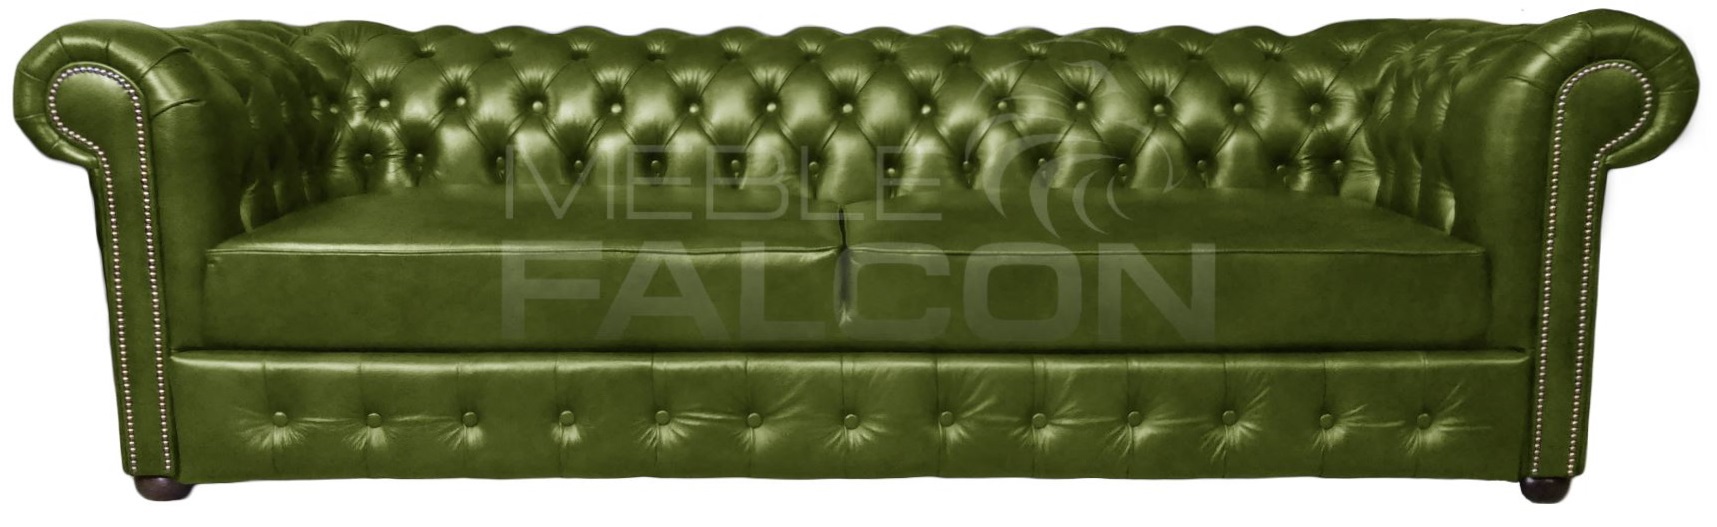 piękna sofa chesterfield rozkładana skóra oliwkowa